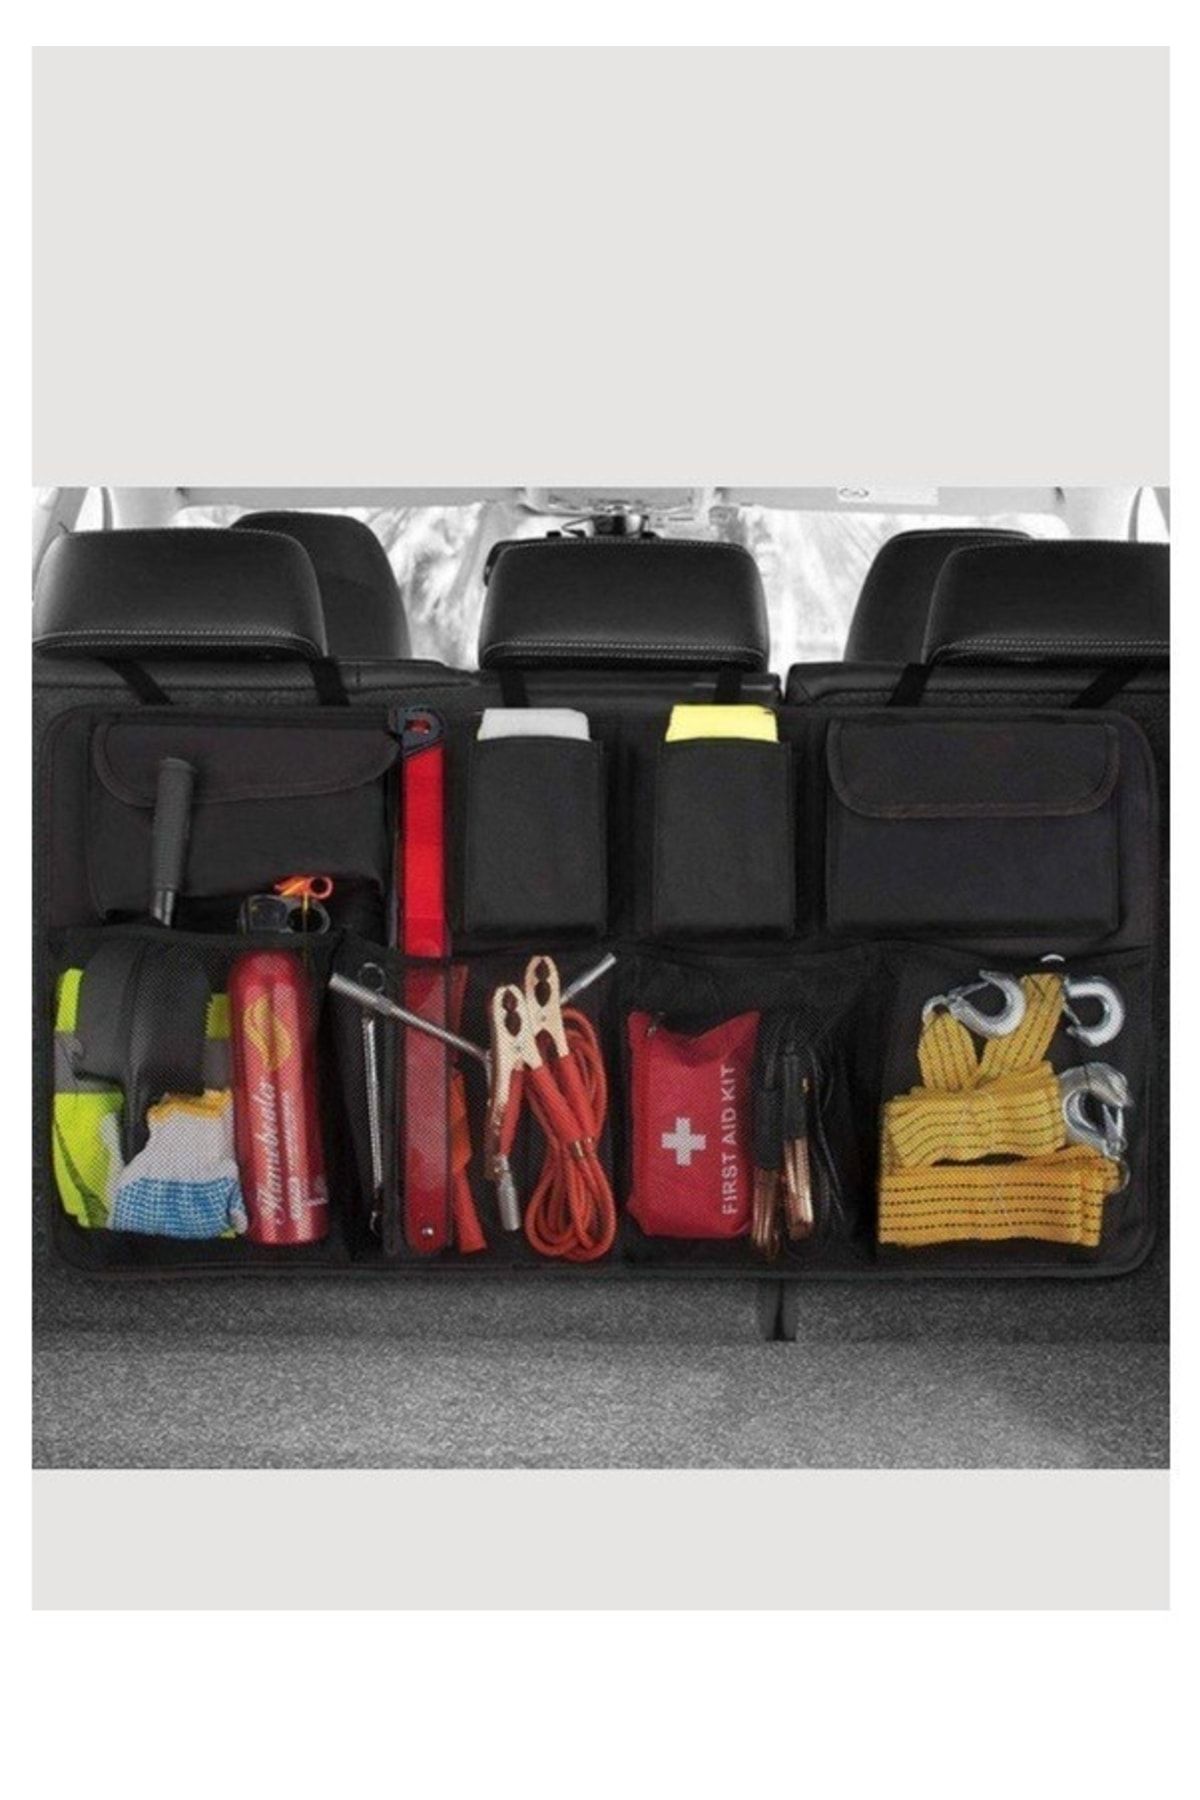 Arnee Vehicle Luggage Bag Car In-Vehicle Luggage Organizer Vehicle Luggage Organizer  Auto Storage Tool Bag - Trendyol